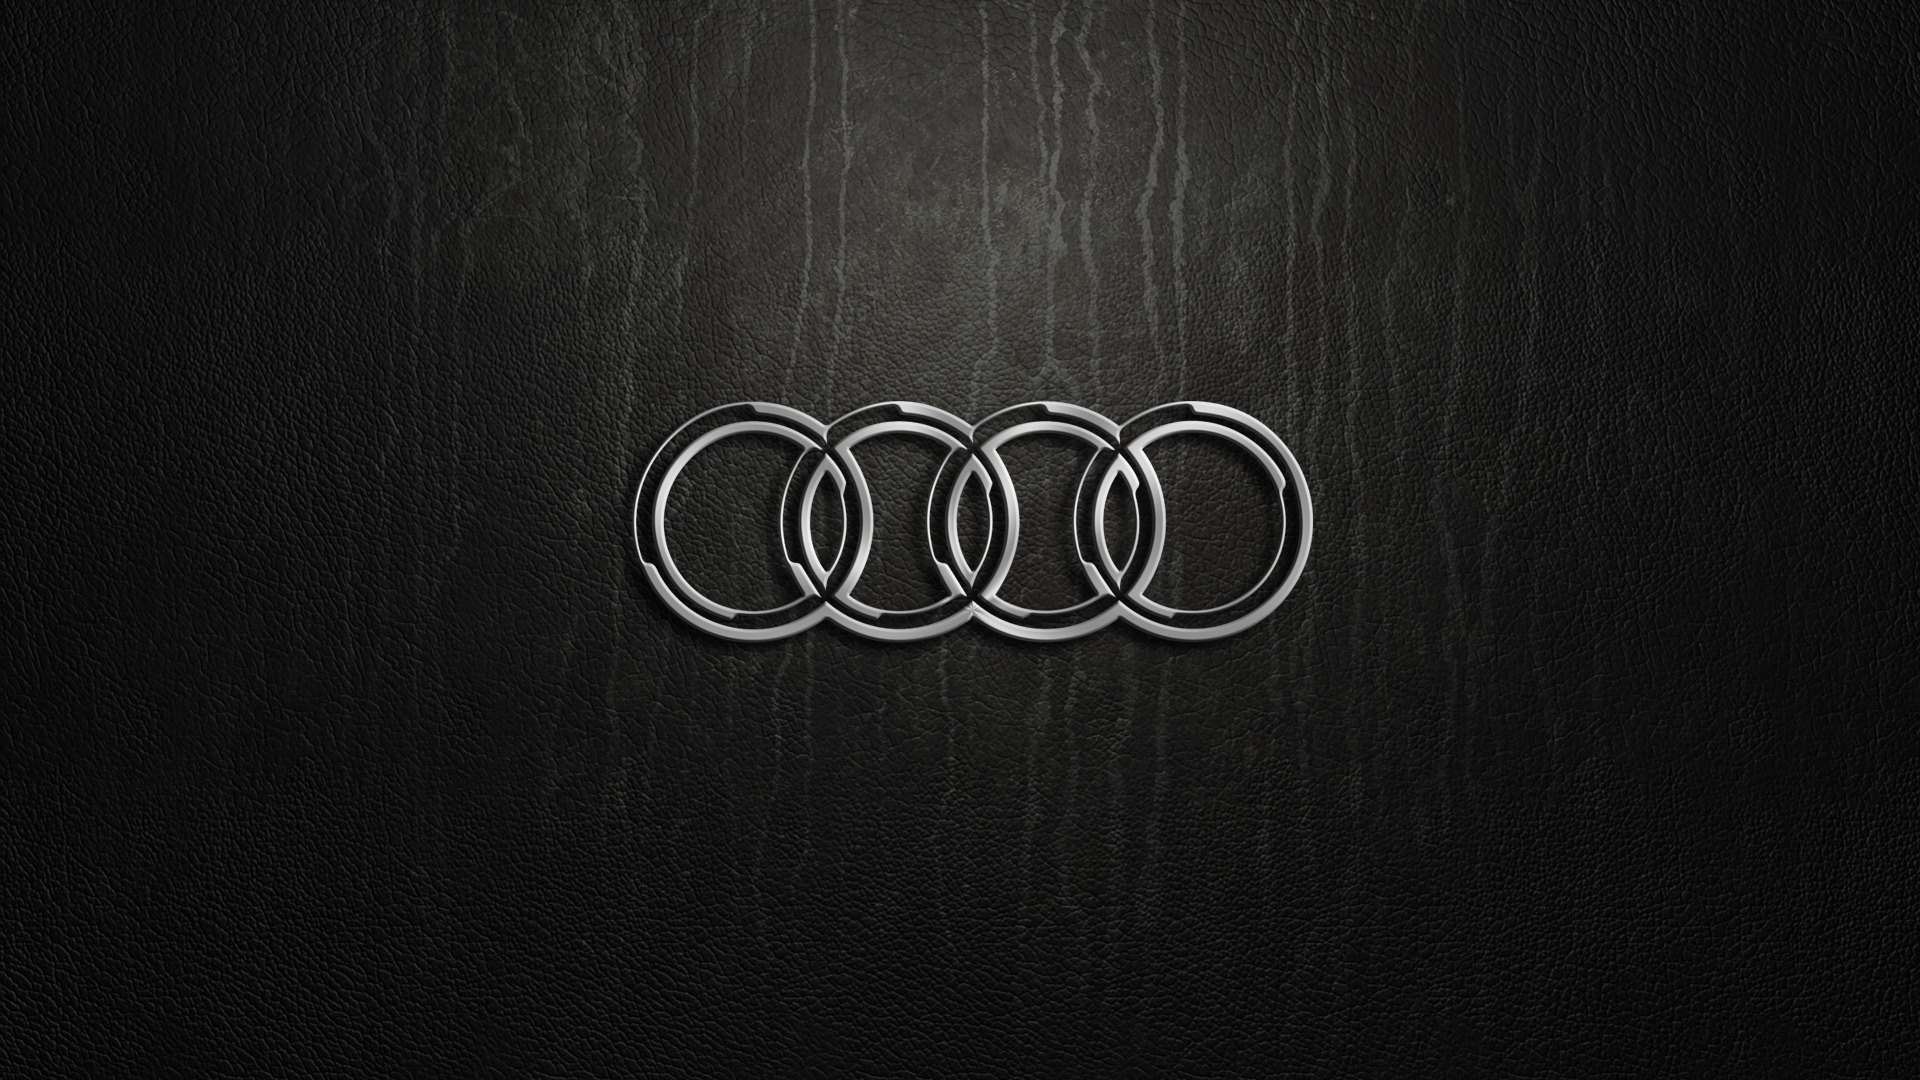 50 Audi Rings Wallpaper On Wallpapersafari